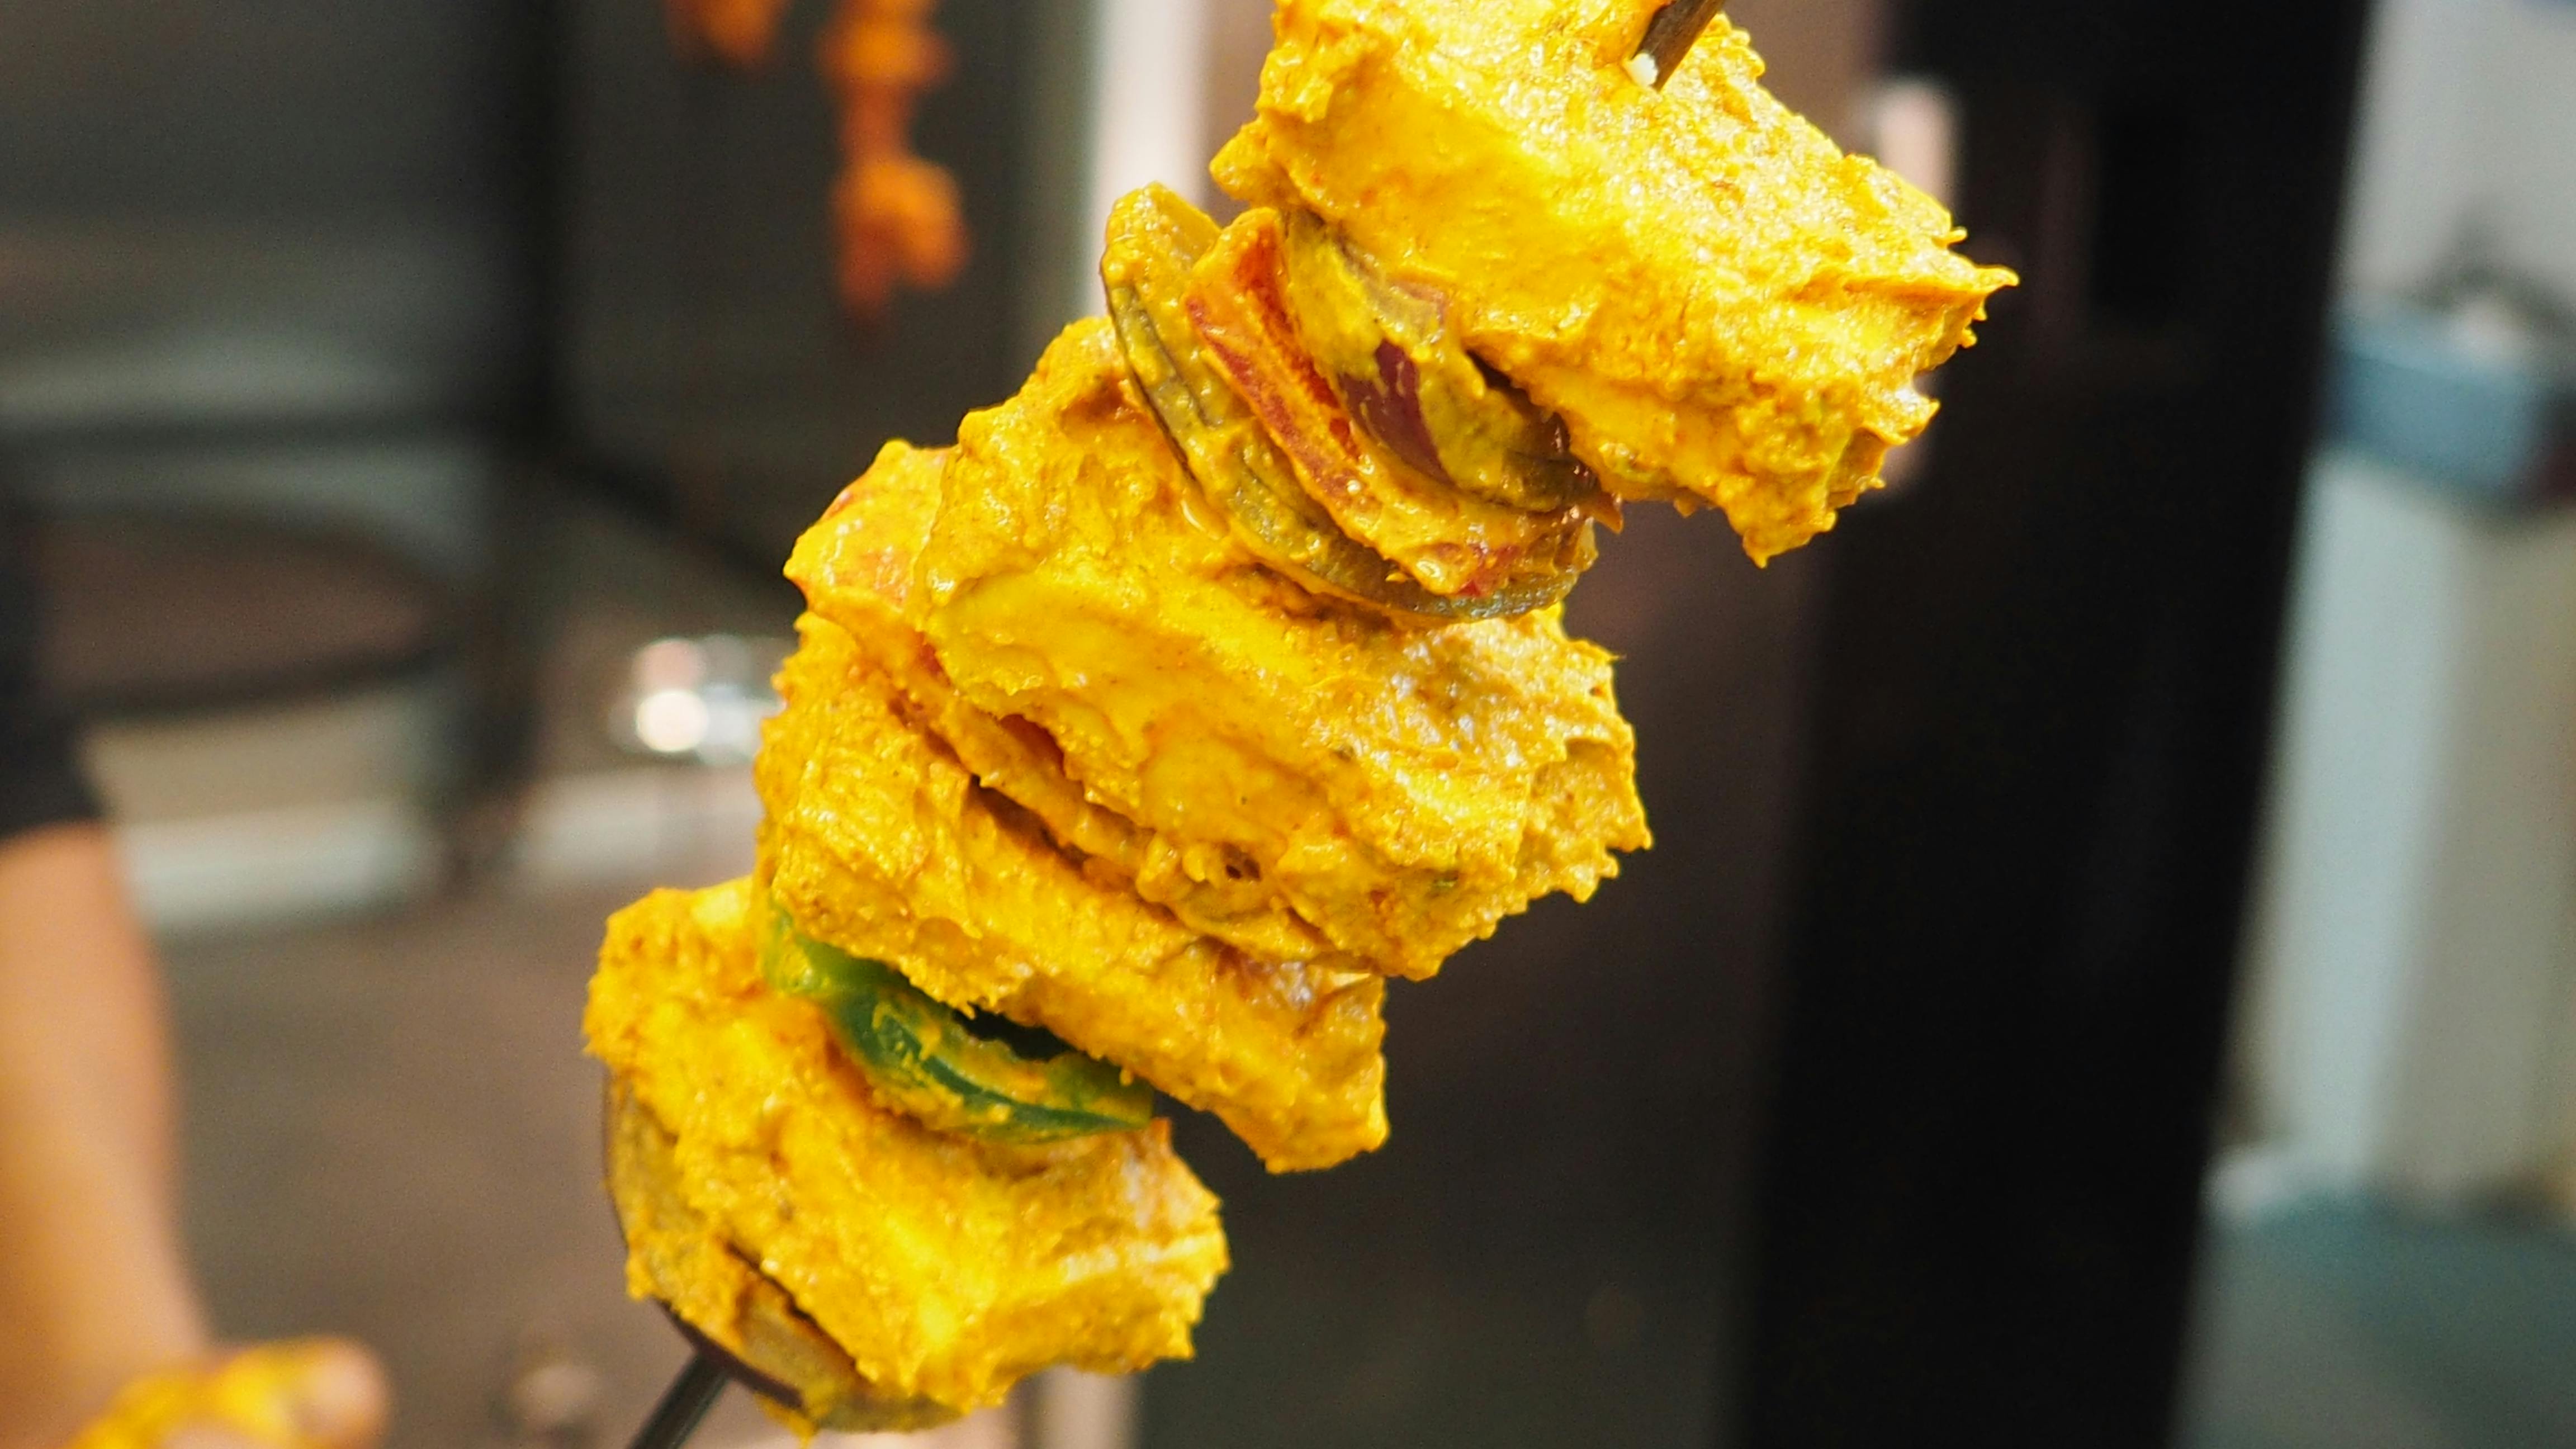 Kostenloses Foto zum Thema: curry, indische feine küche, indische küche